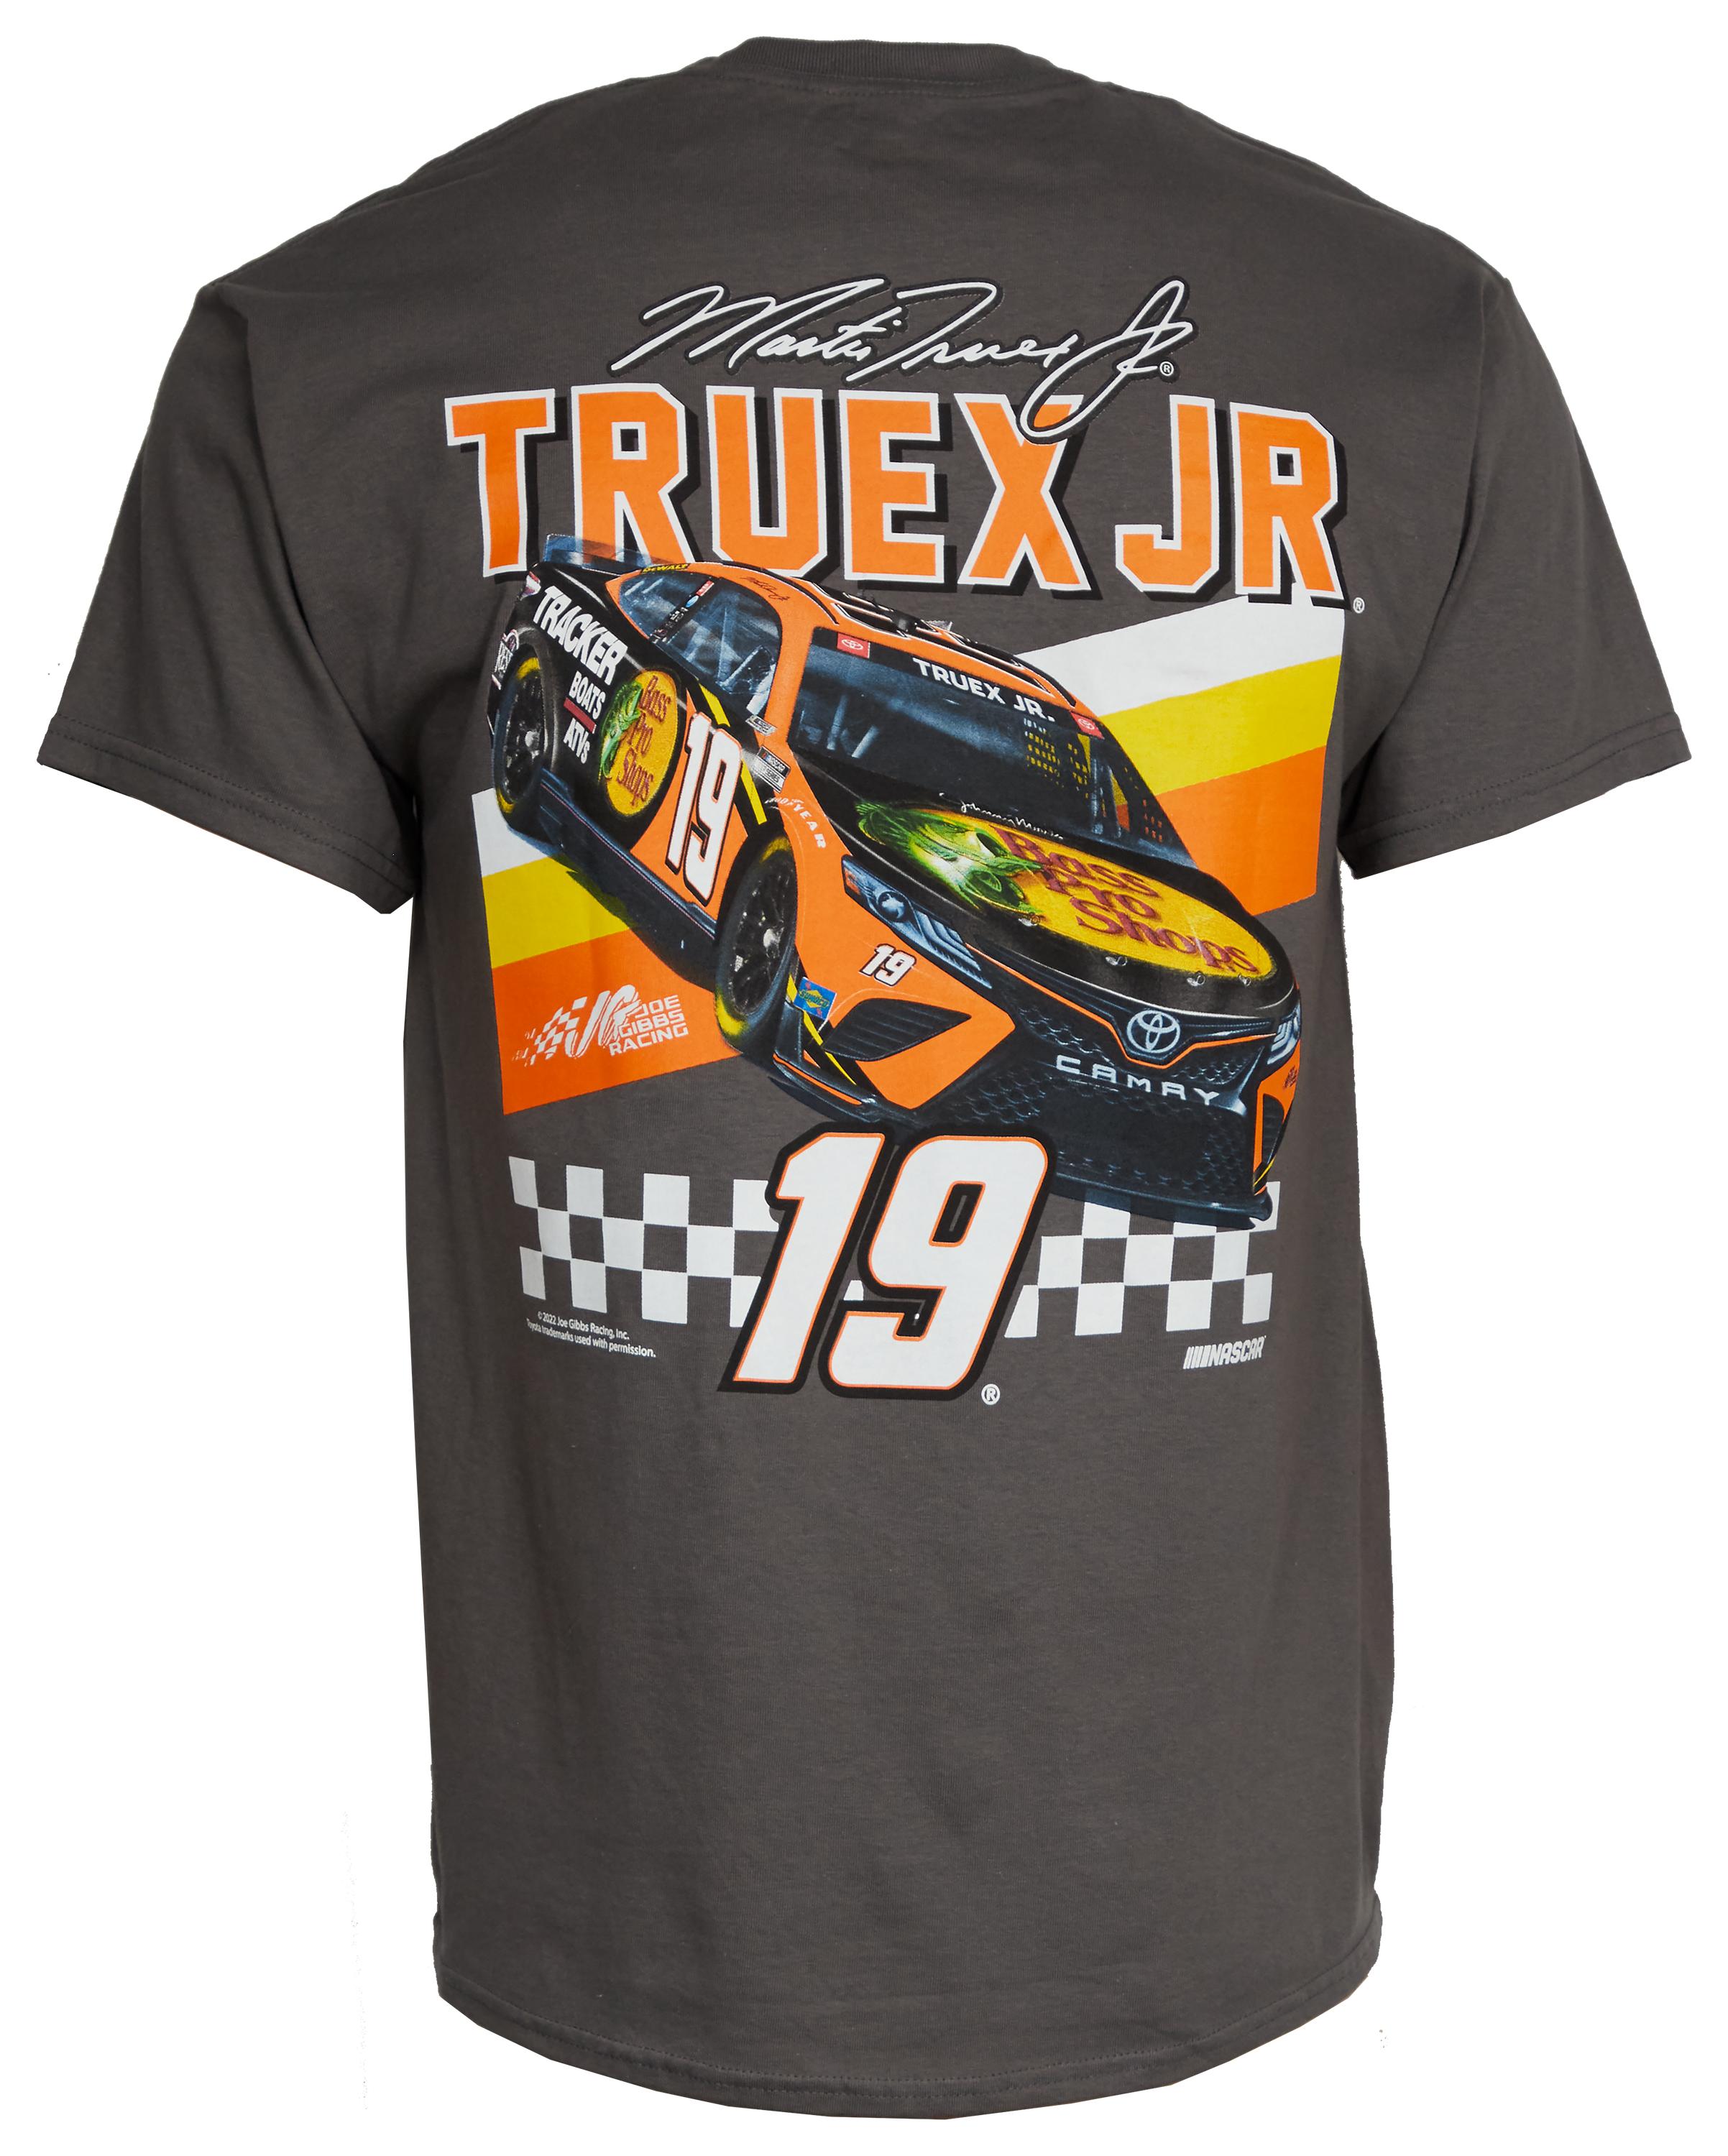 Bass Pro Shops NASCAR Martin Truex Jr. Front Runner Tee for Men - Charcoal - 3XL